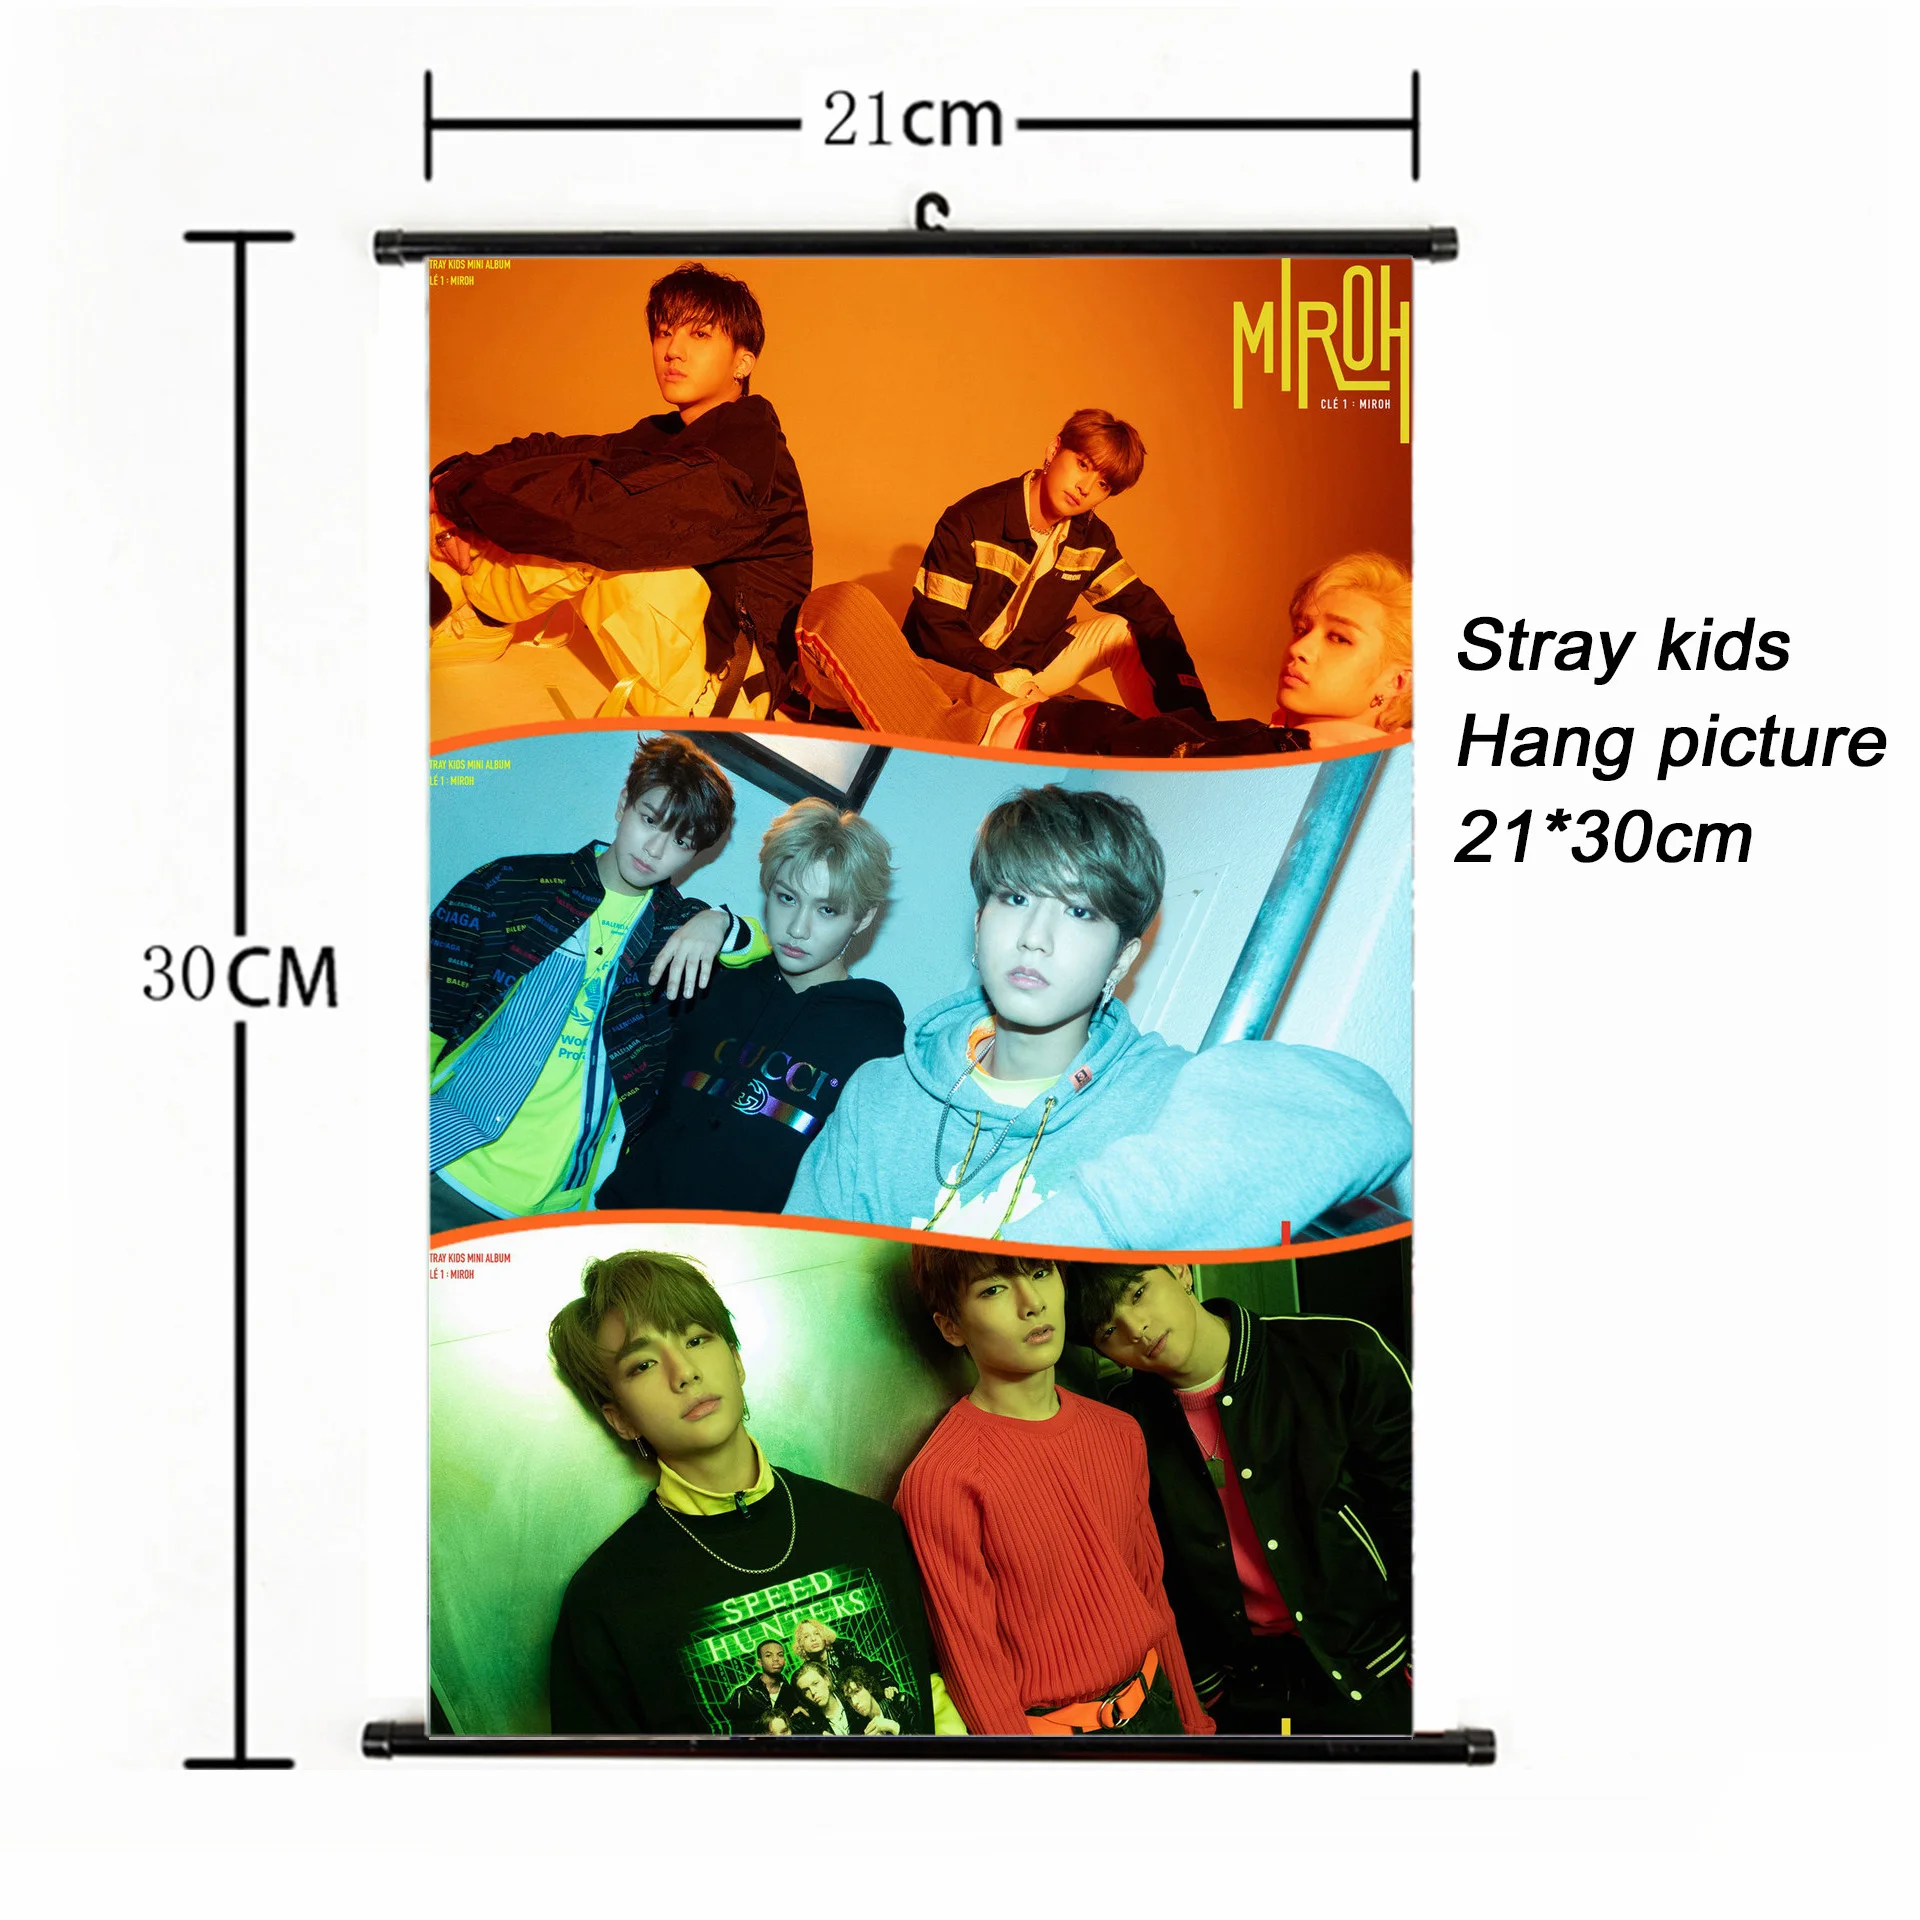 Мода Kpop бродячие дети повесить картину 21*30 см плакат бродячий дети MIROH альбом Фотокарта для фанатов Коллекция корейский Канцелярский набор - Цвет: SKD00802